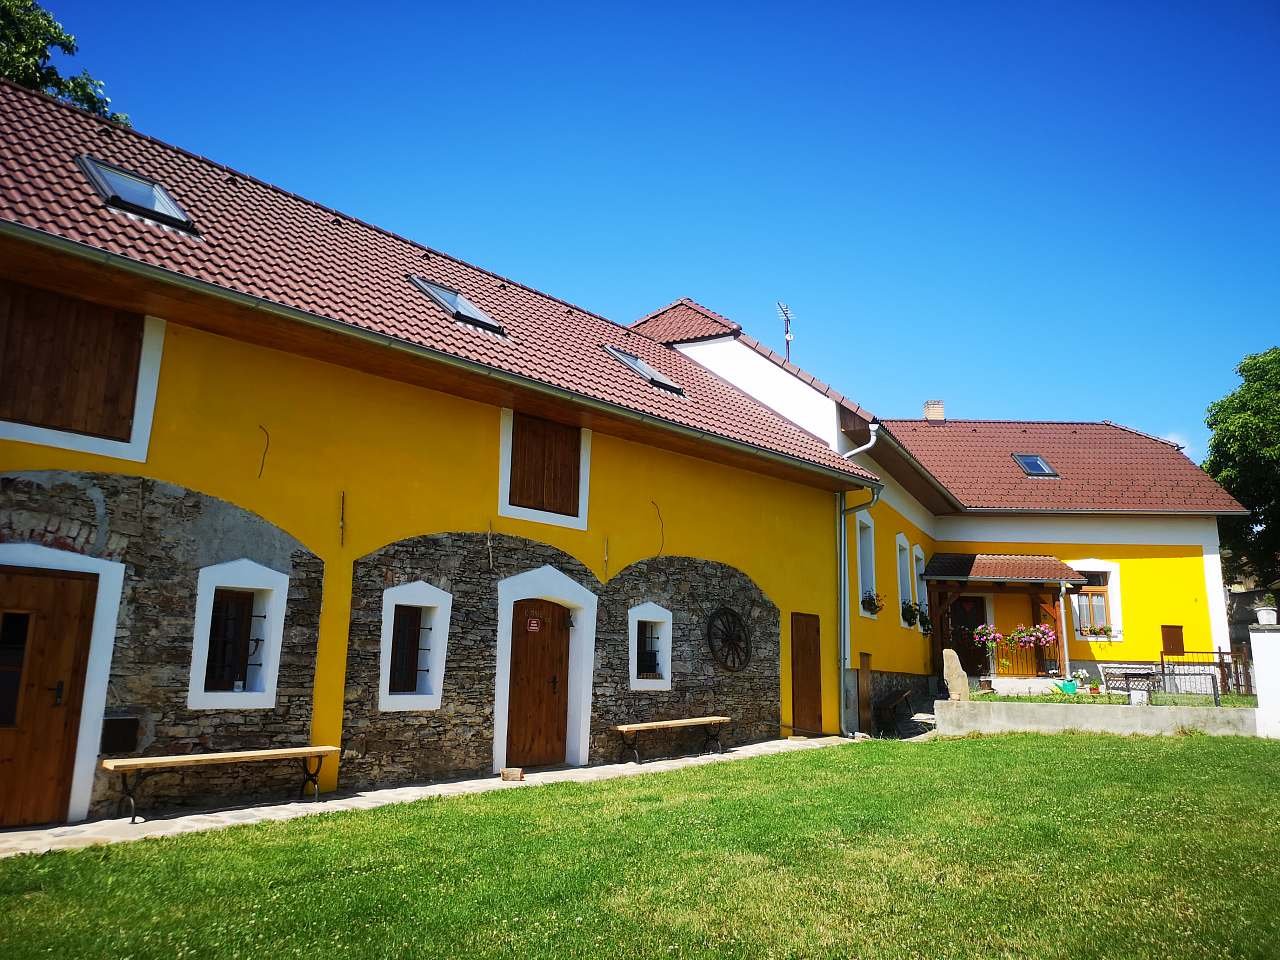 Cottage near Prokůpka for rent Želeč in South Bohemia